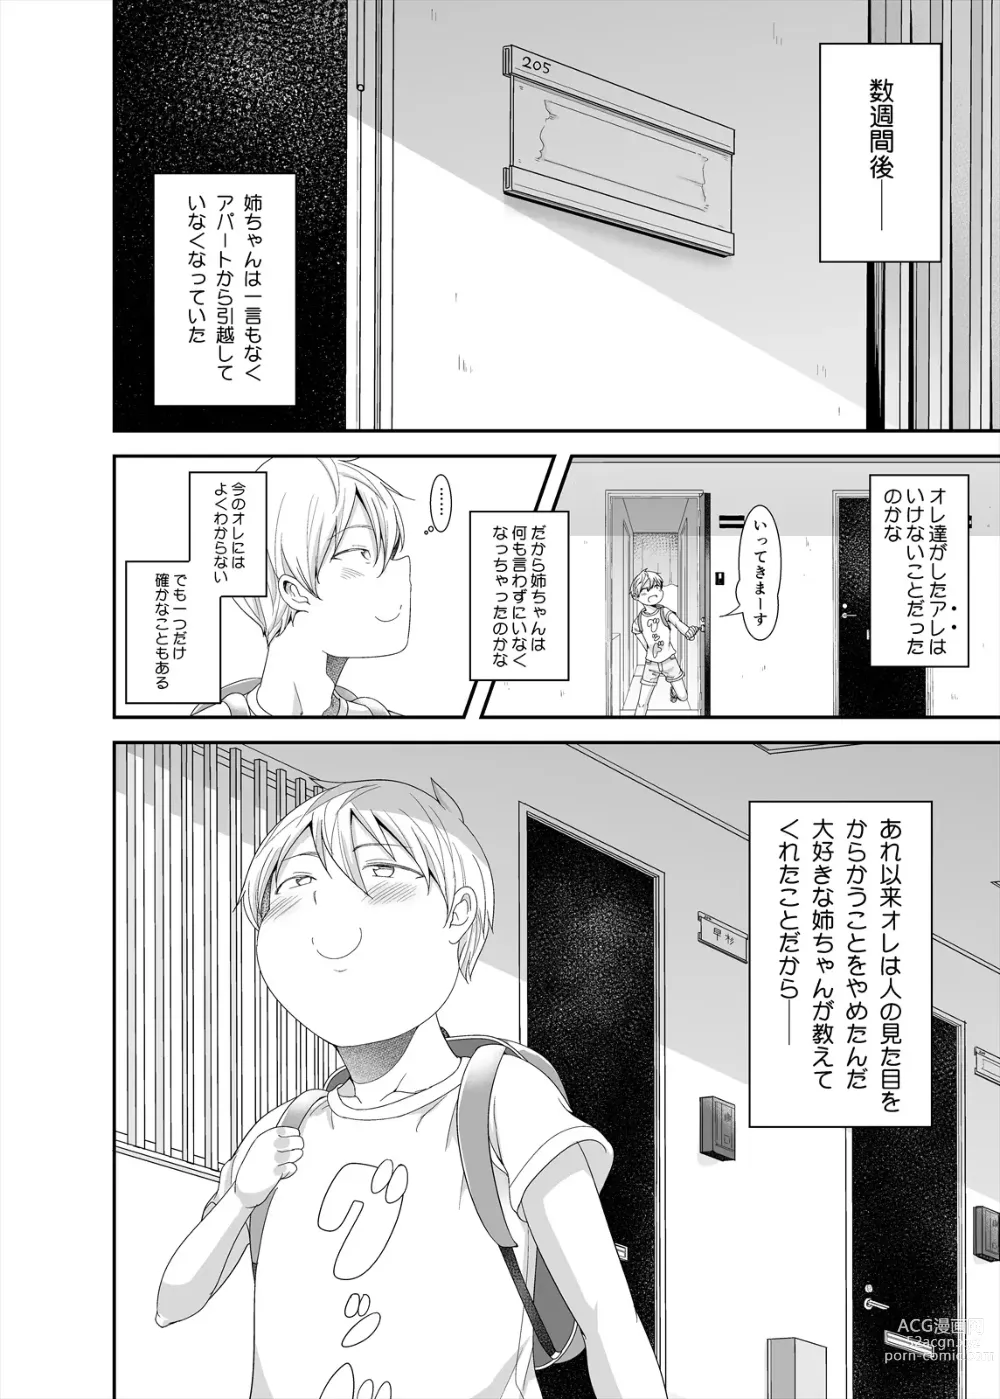 Page 32 of doujinshi Otonari no jimipotya onechan